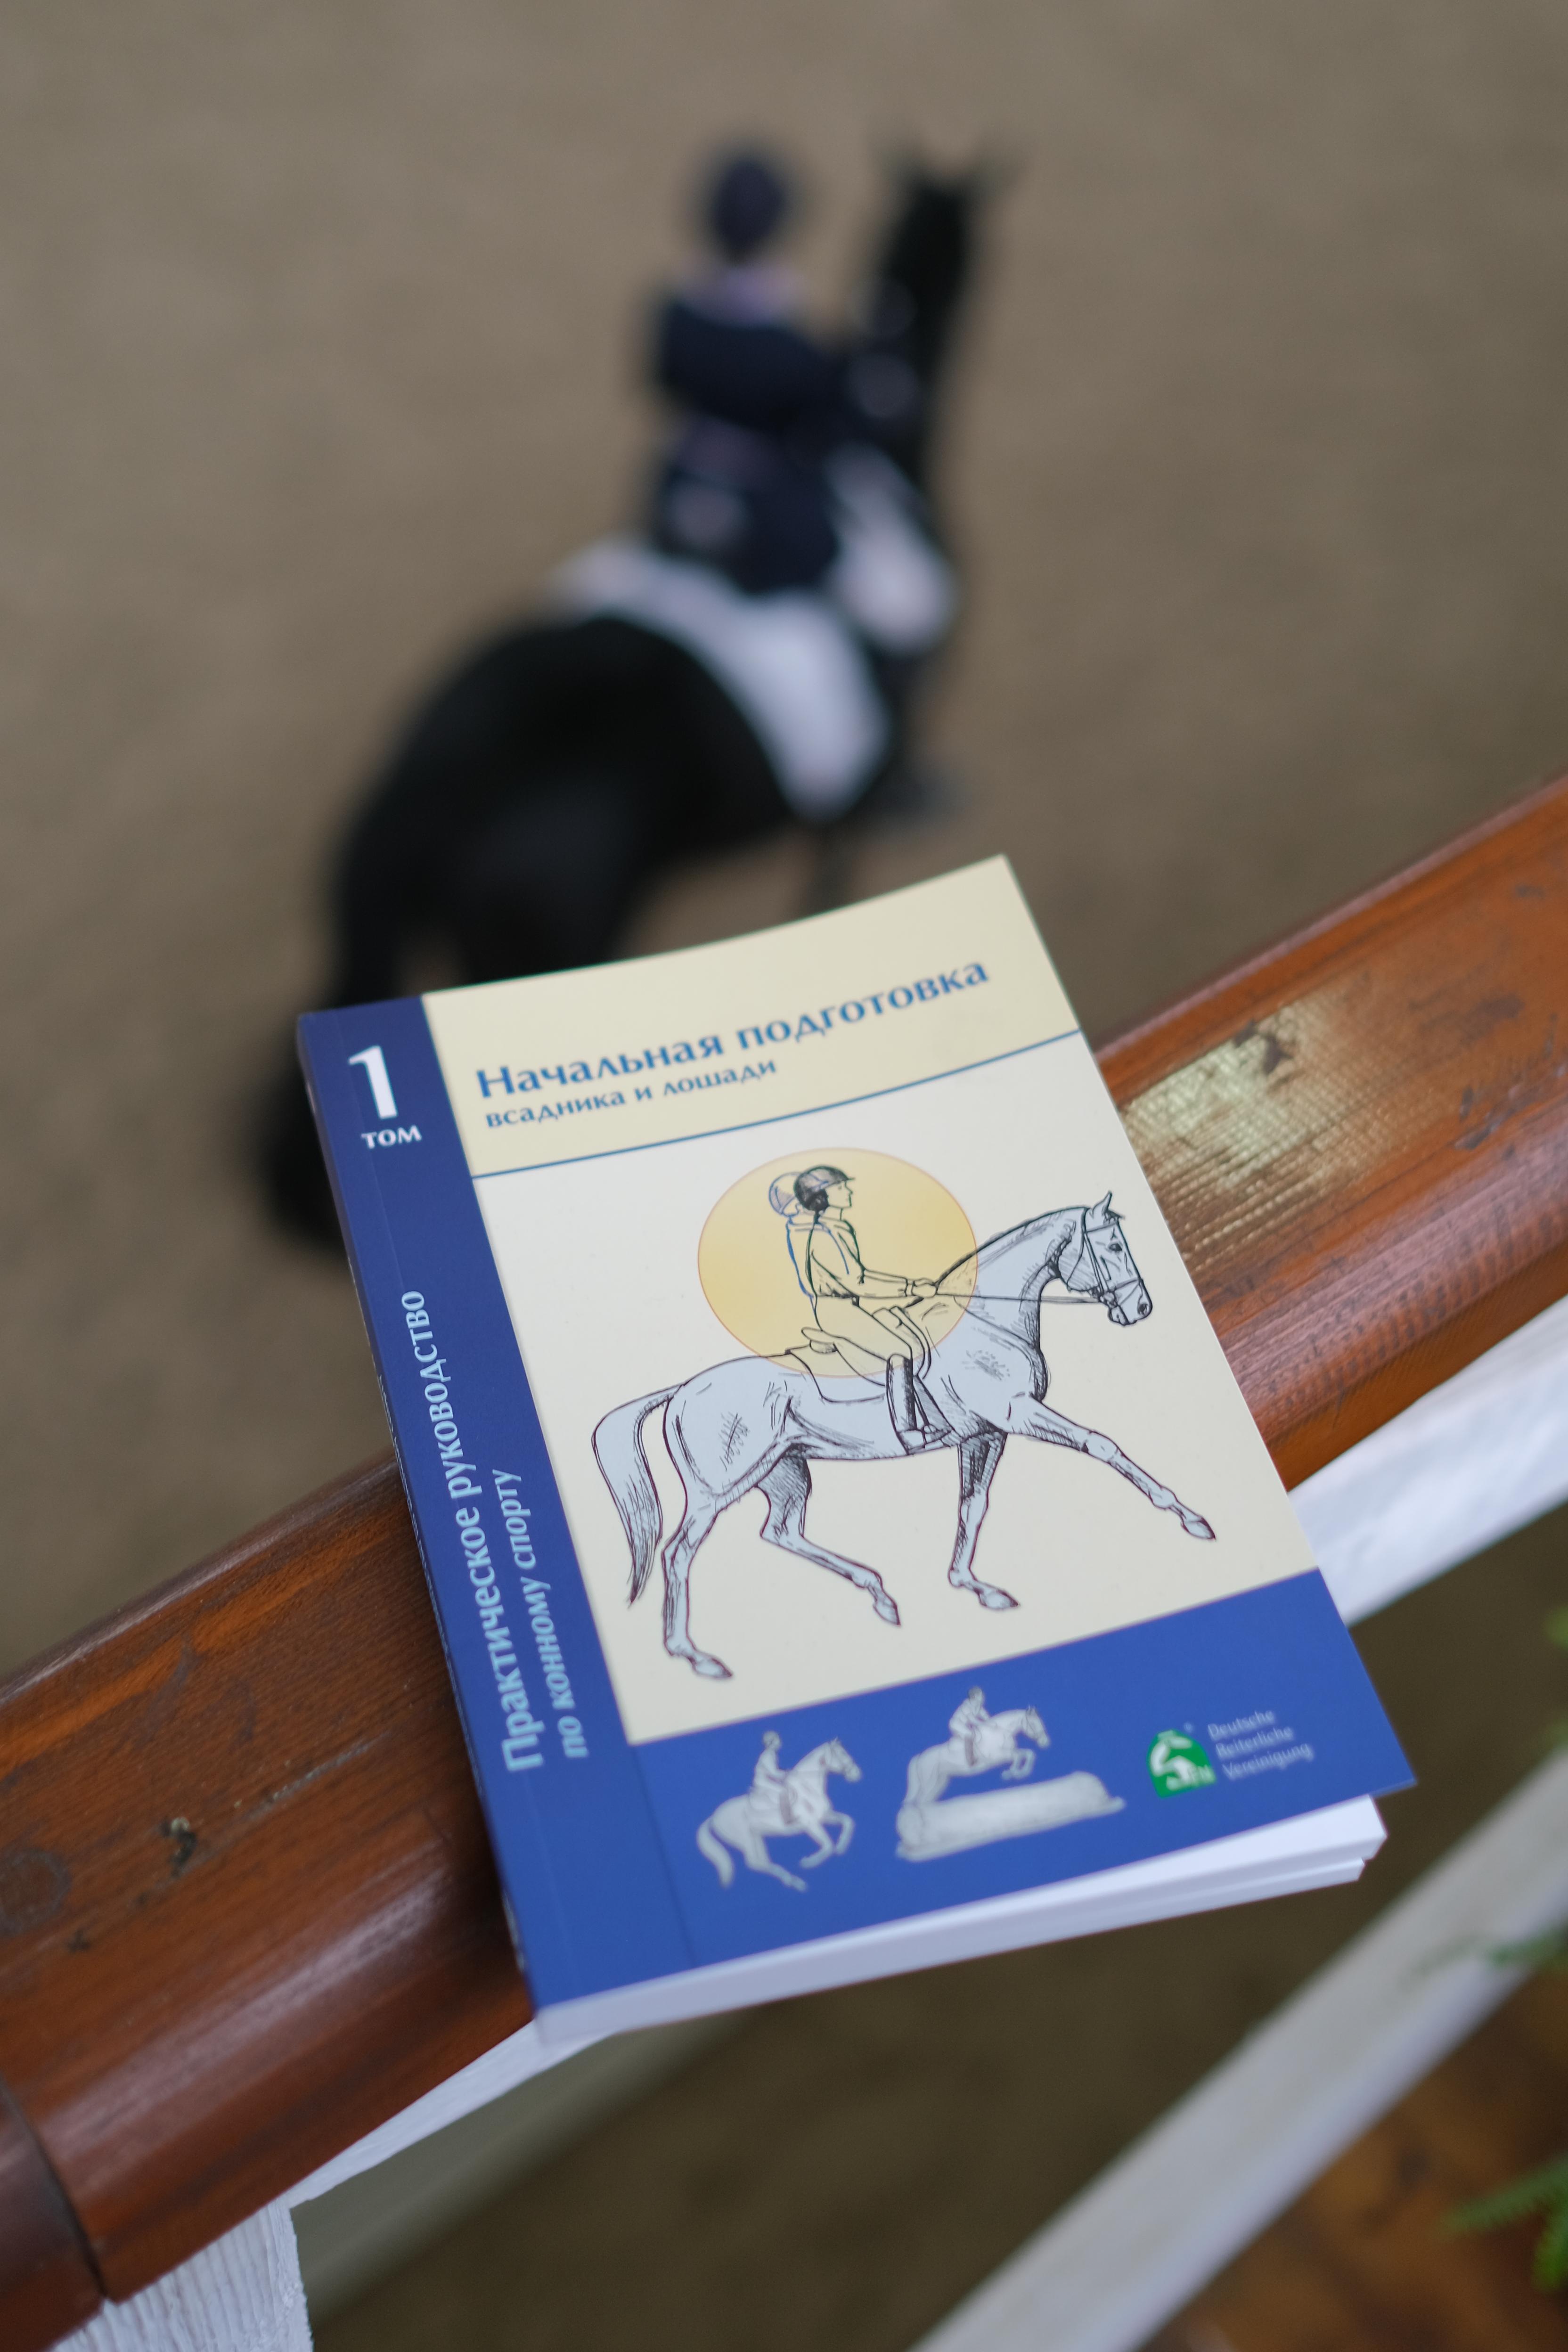 Практическое руководство по конному спорту на русском языке уже в продаже!